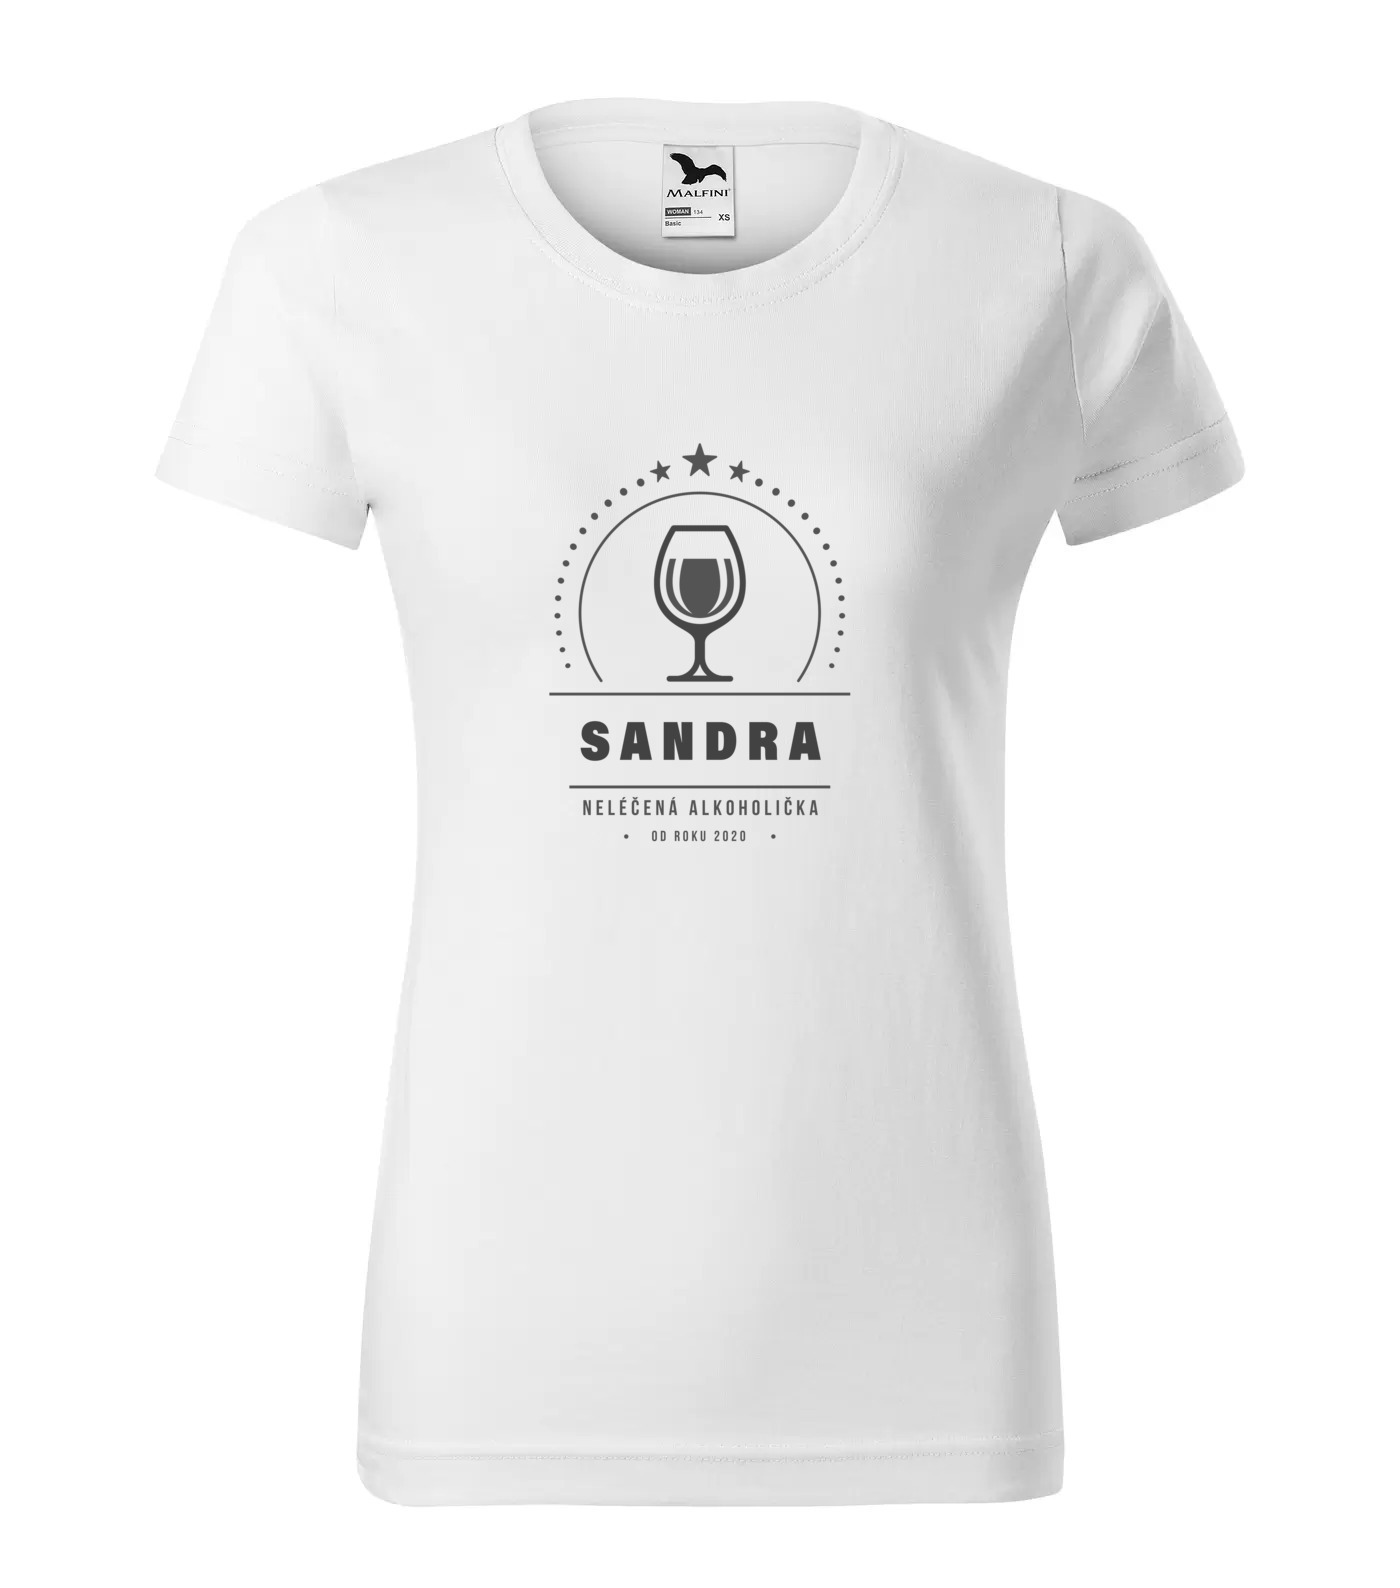 Tričko Alkoholička Sandra